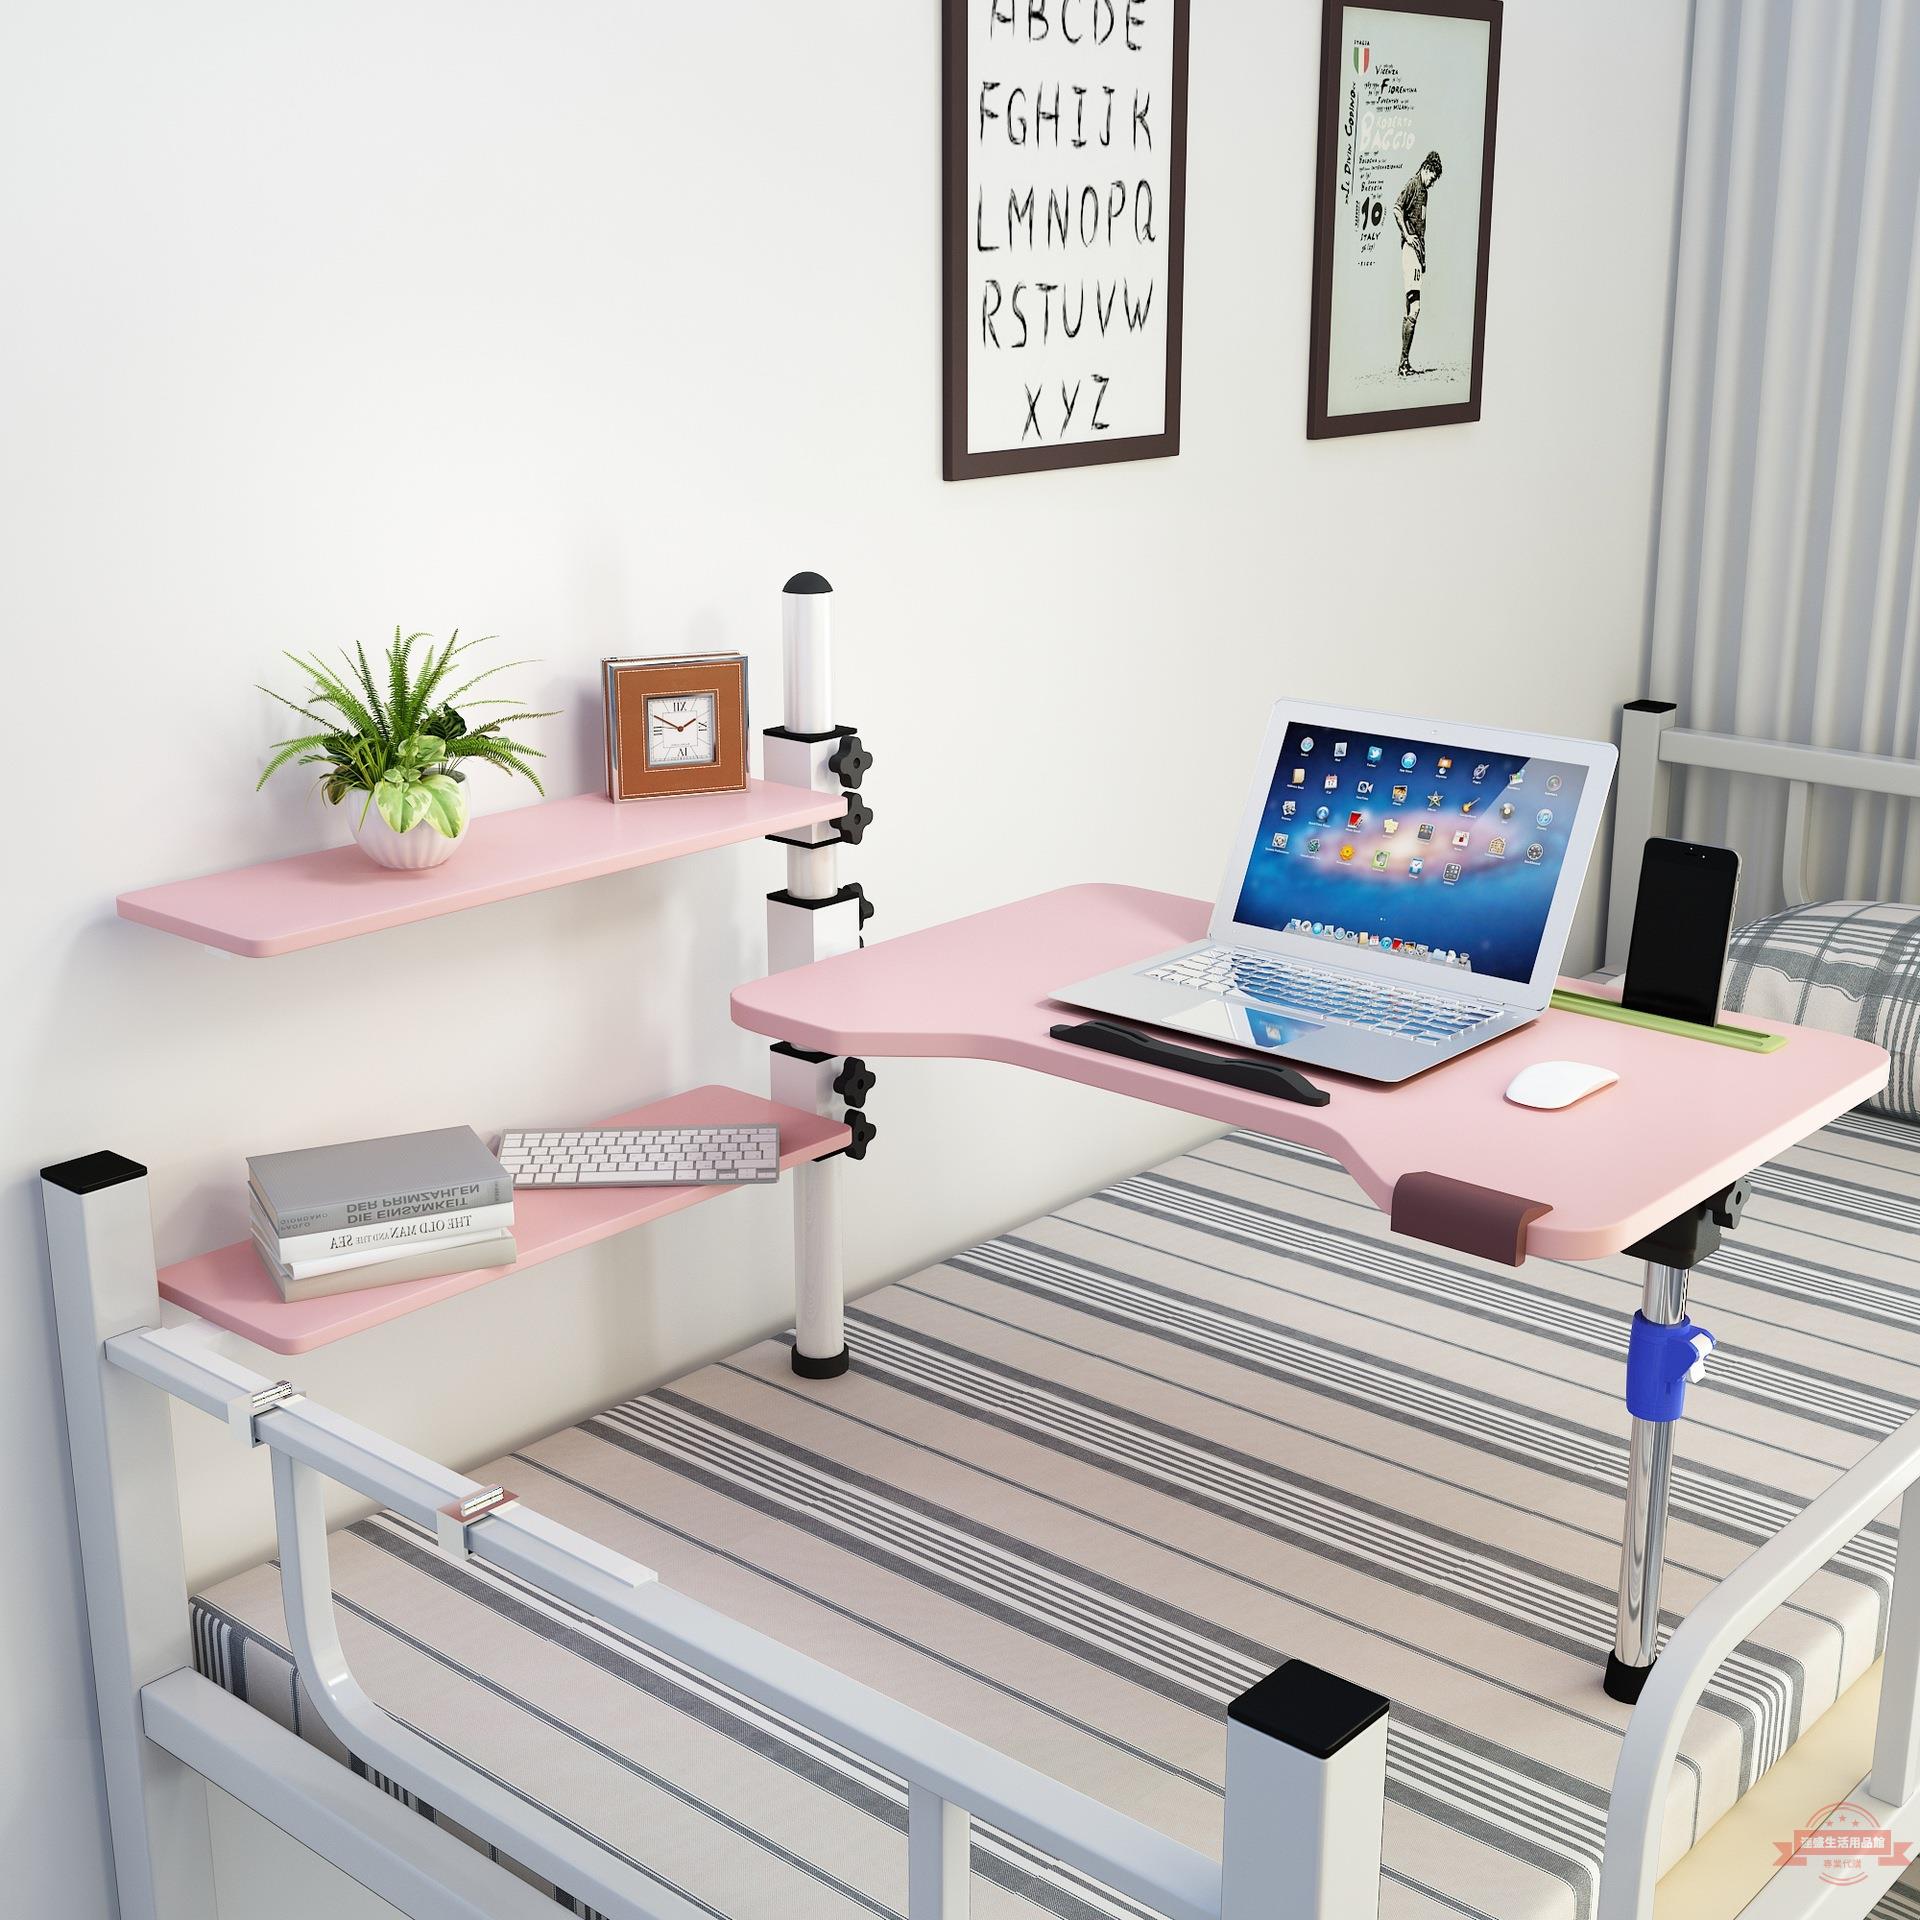 床上書桌旋轉電腦桌大學生宿舍上鋪折疊寢室寫字懸空小桌子床上桌